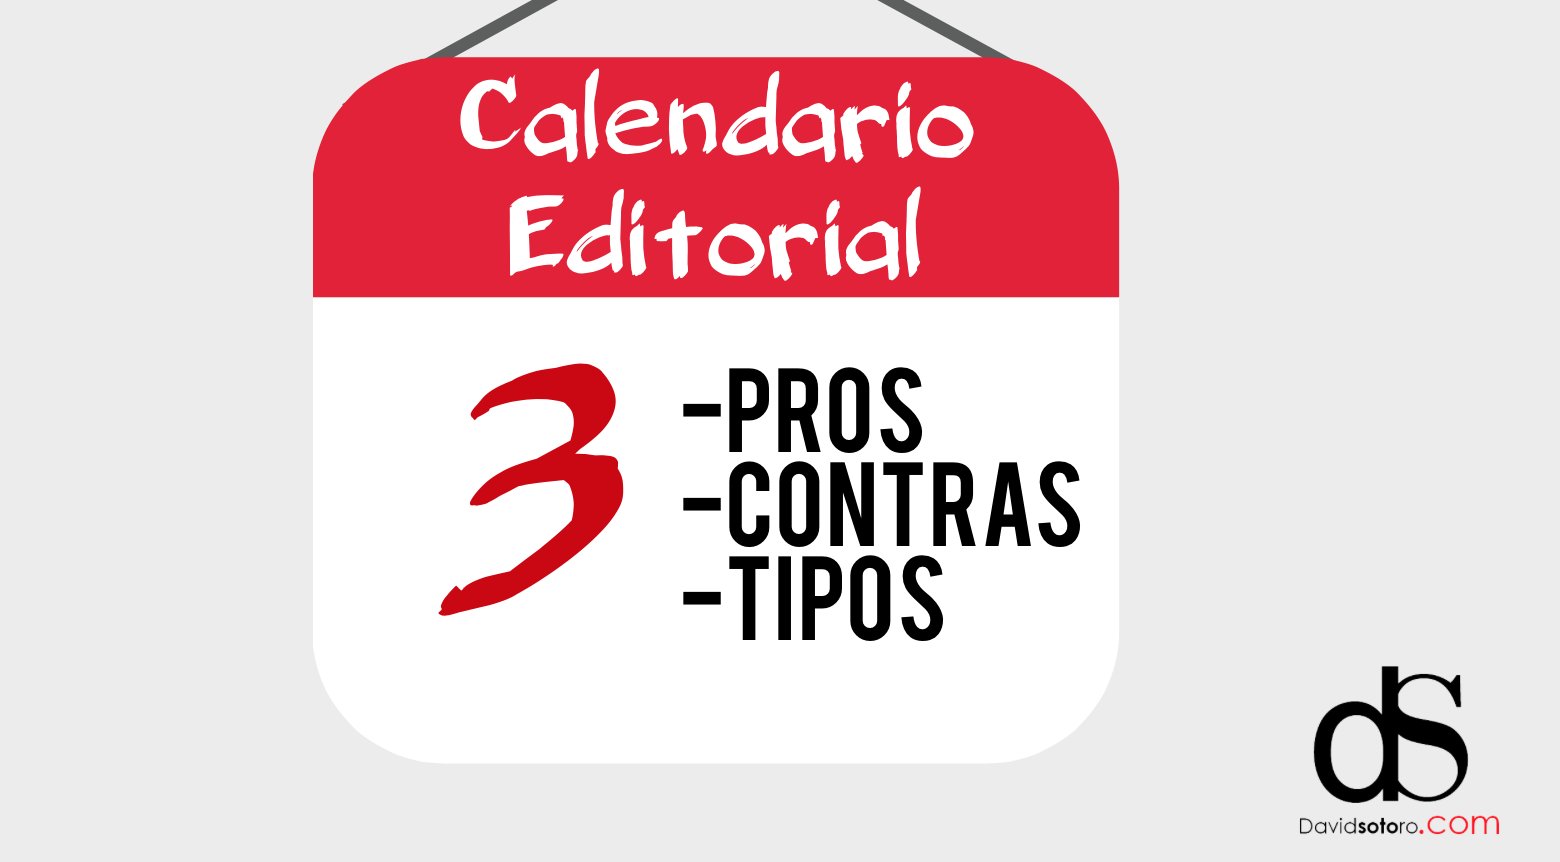 Calendario Editorial para tu blog: Pros, contras y 3 tipos